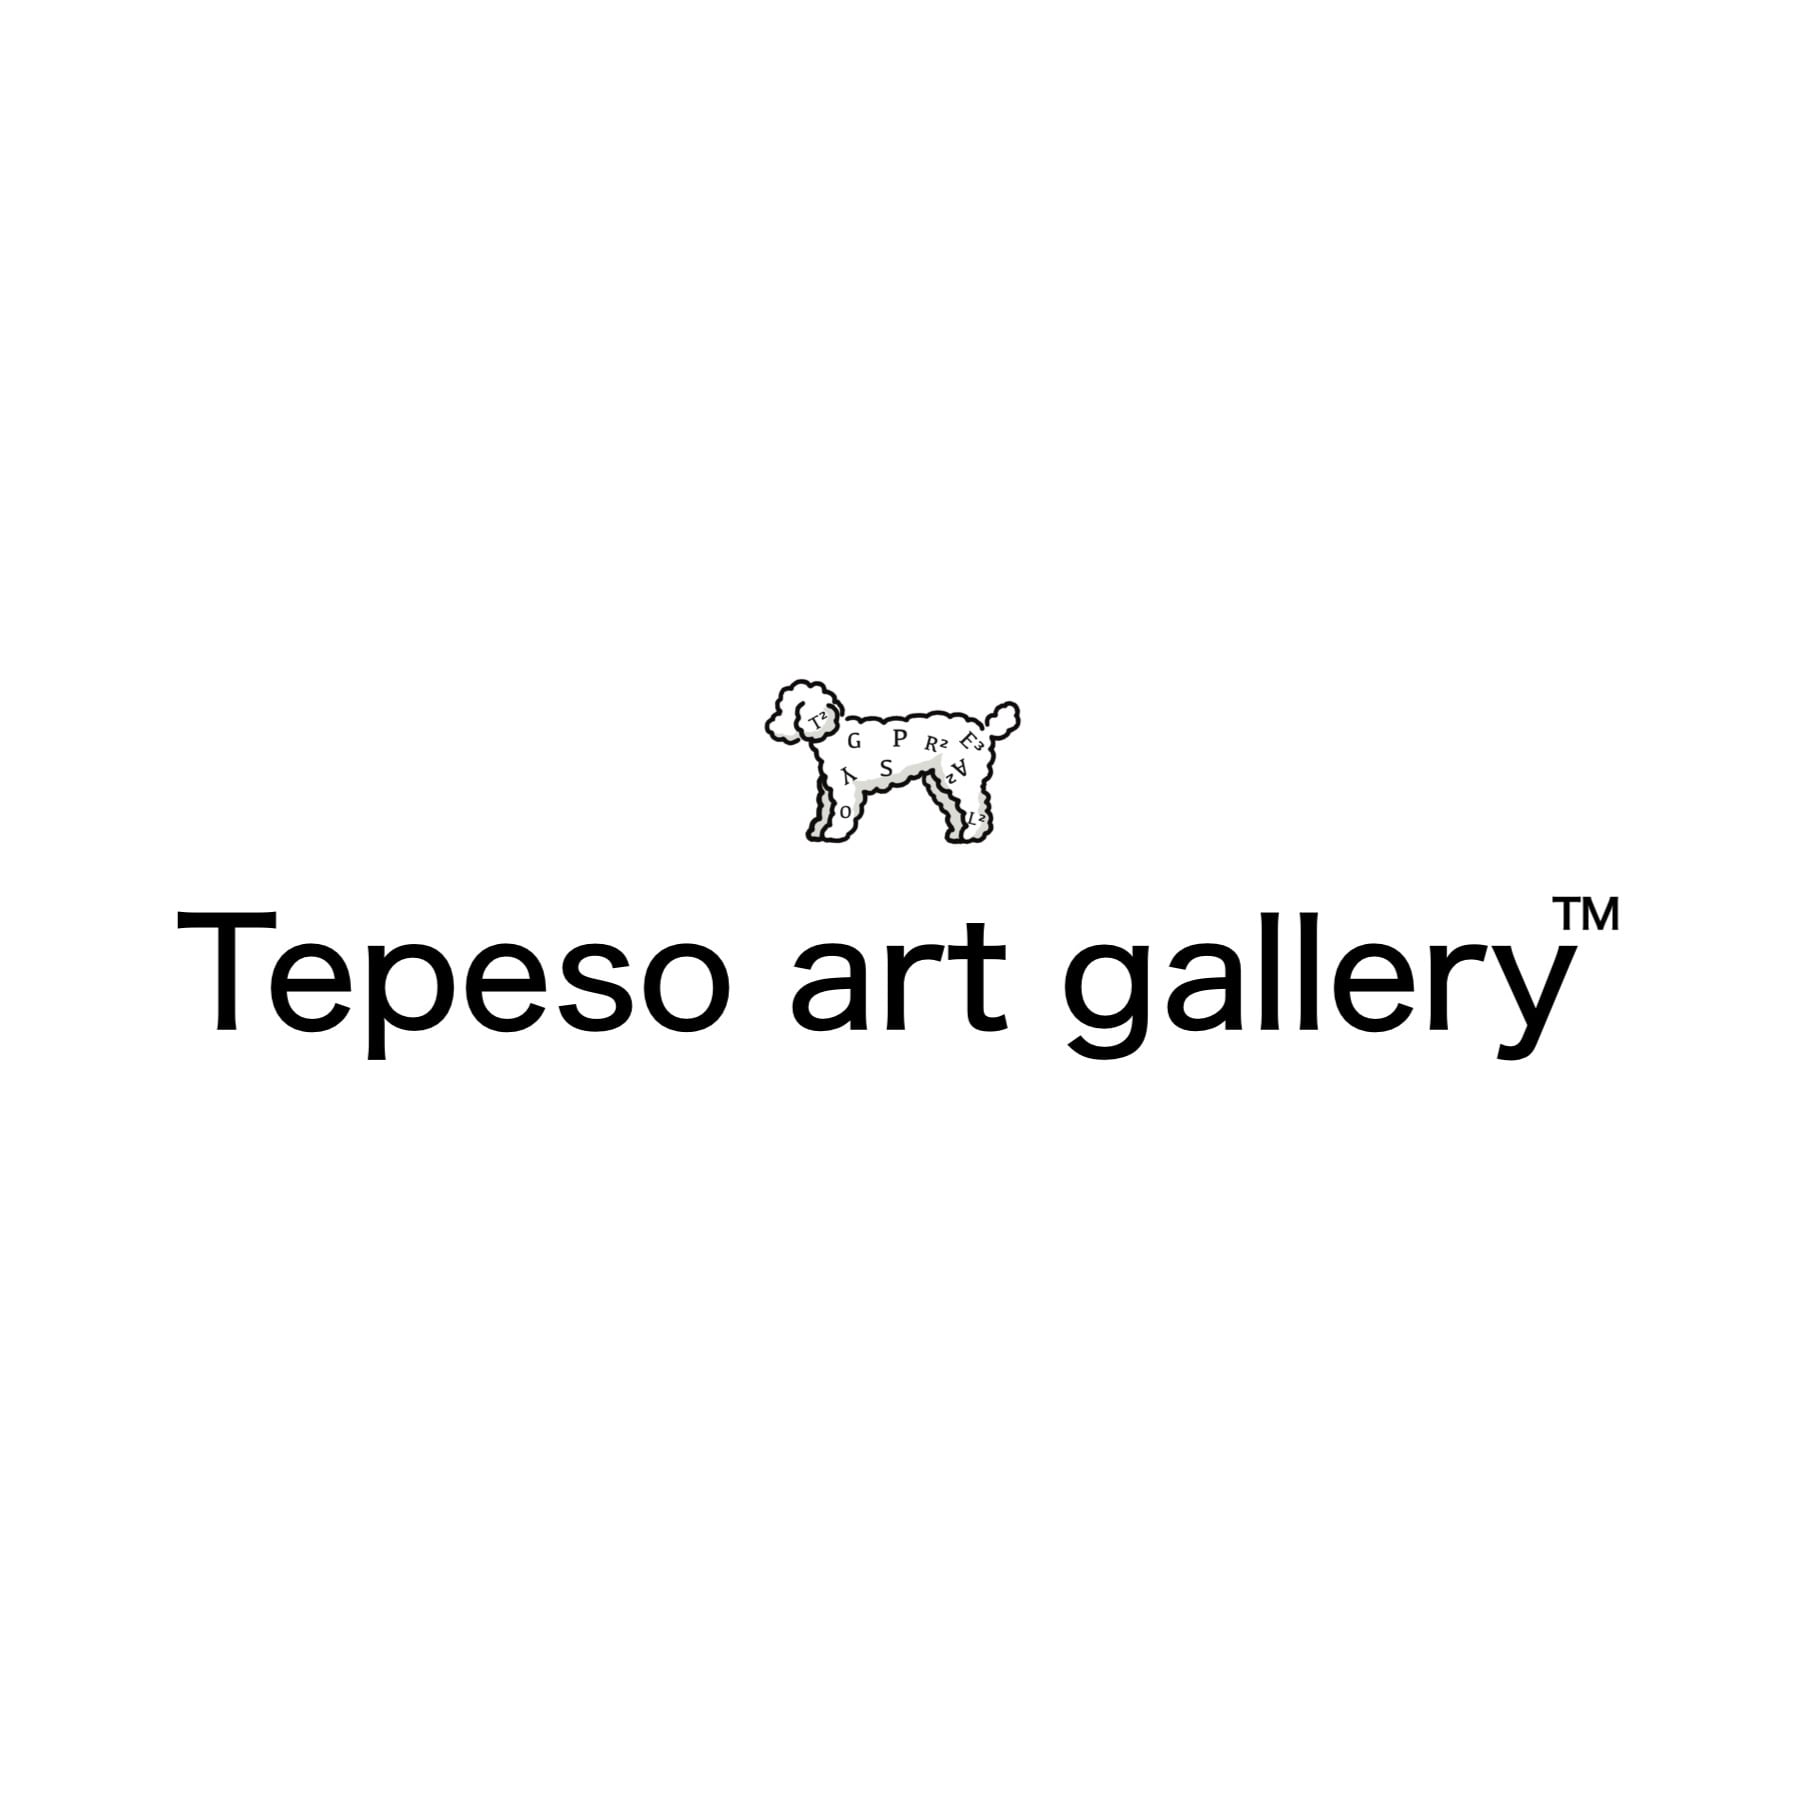 Tepeso art gallery